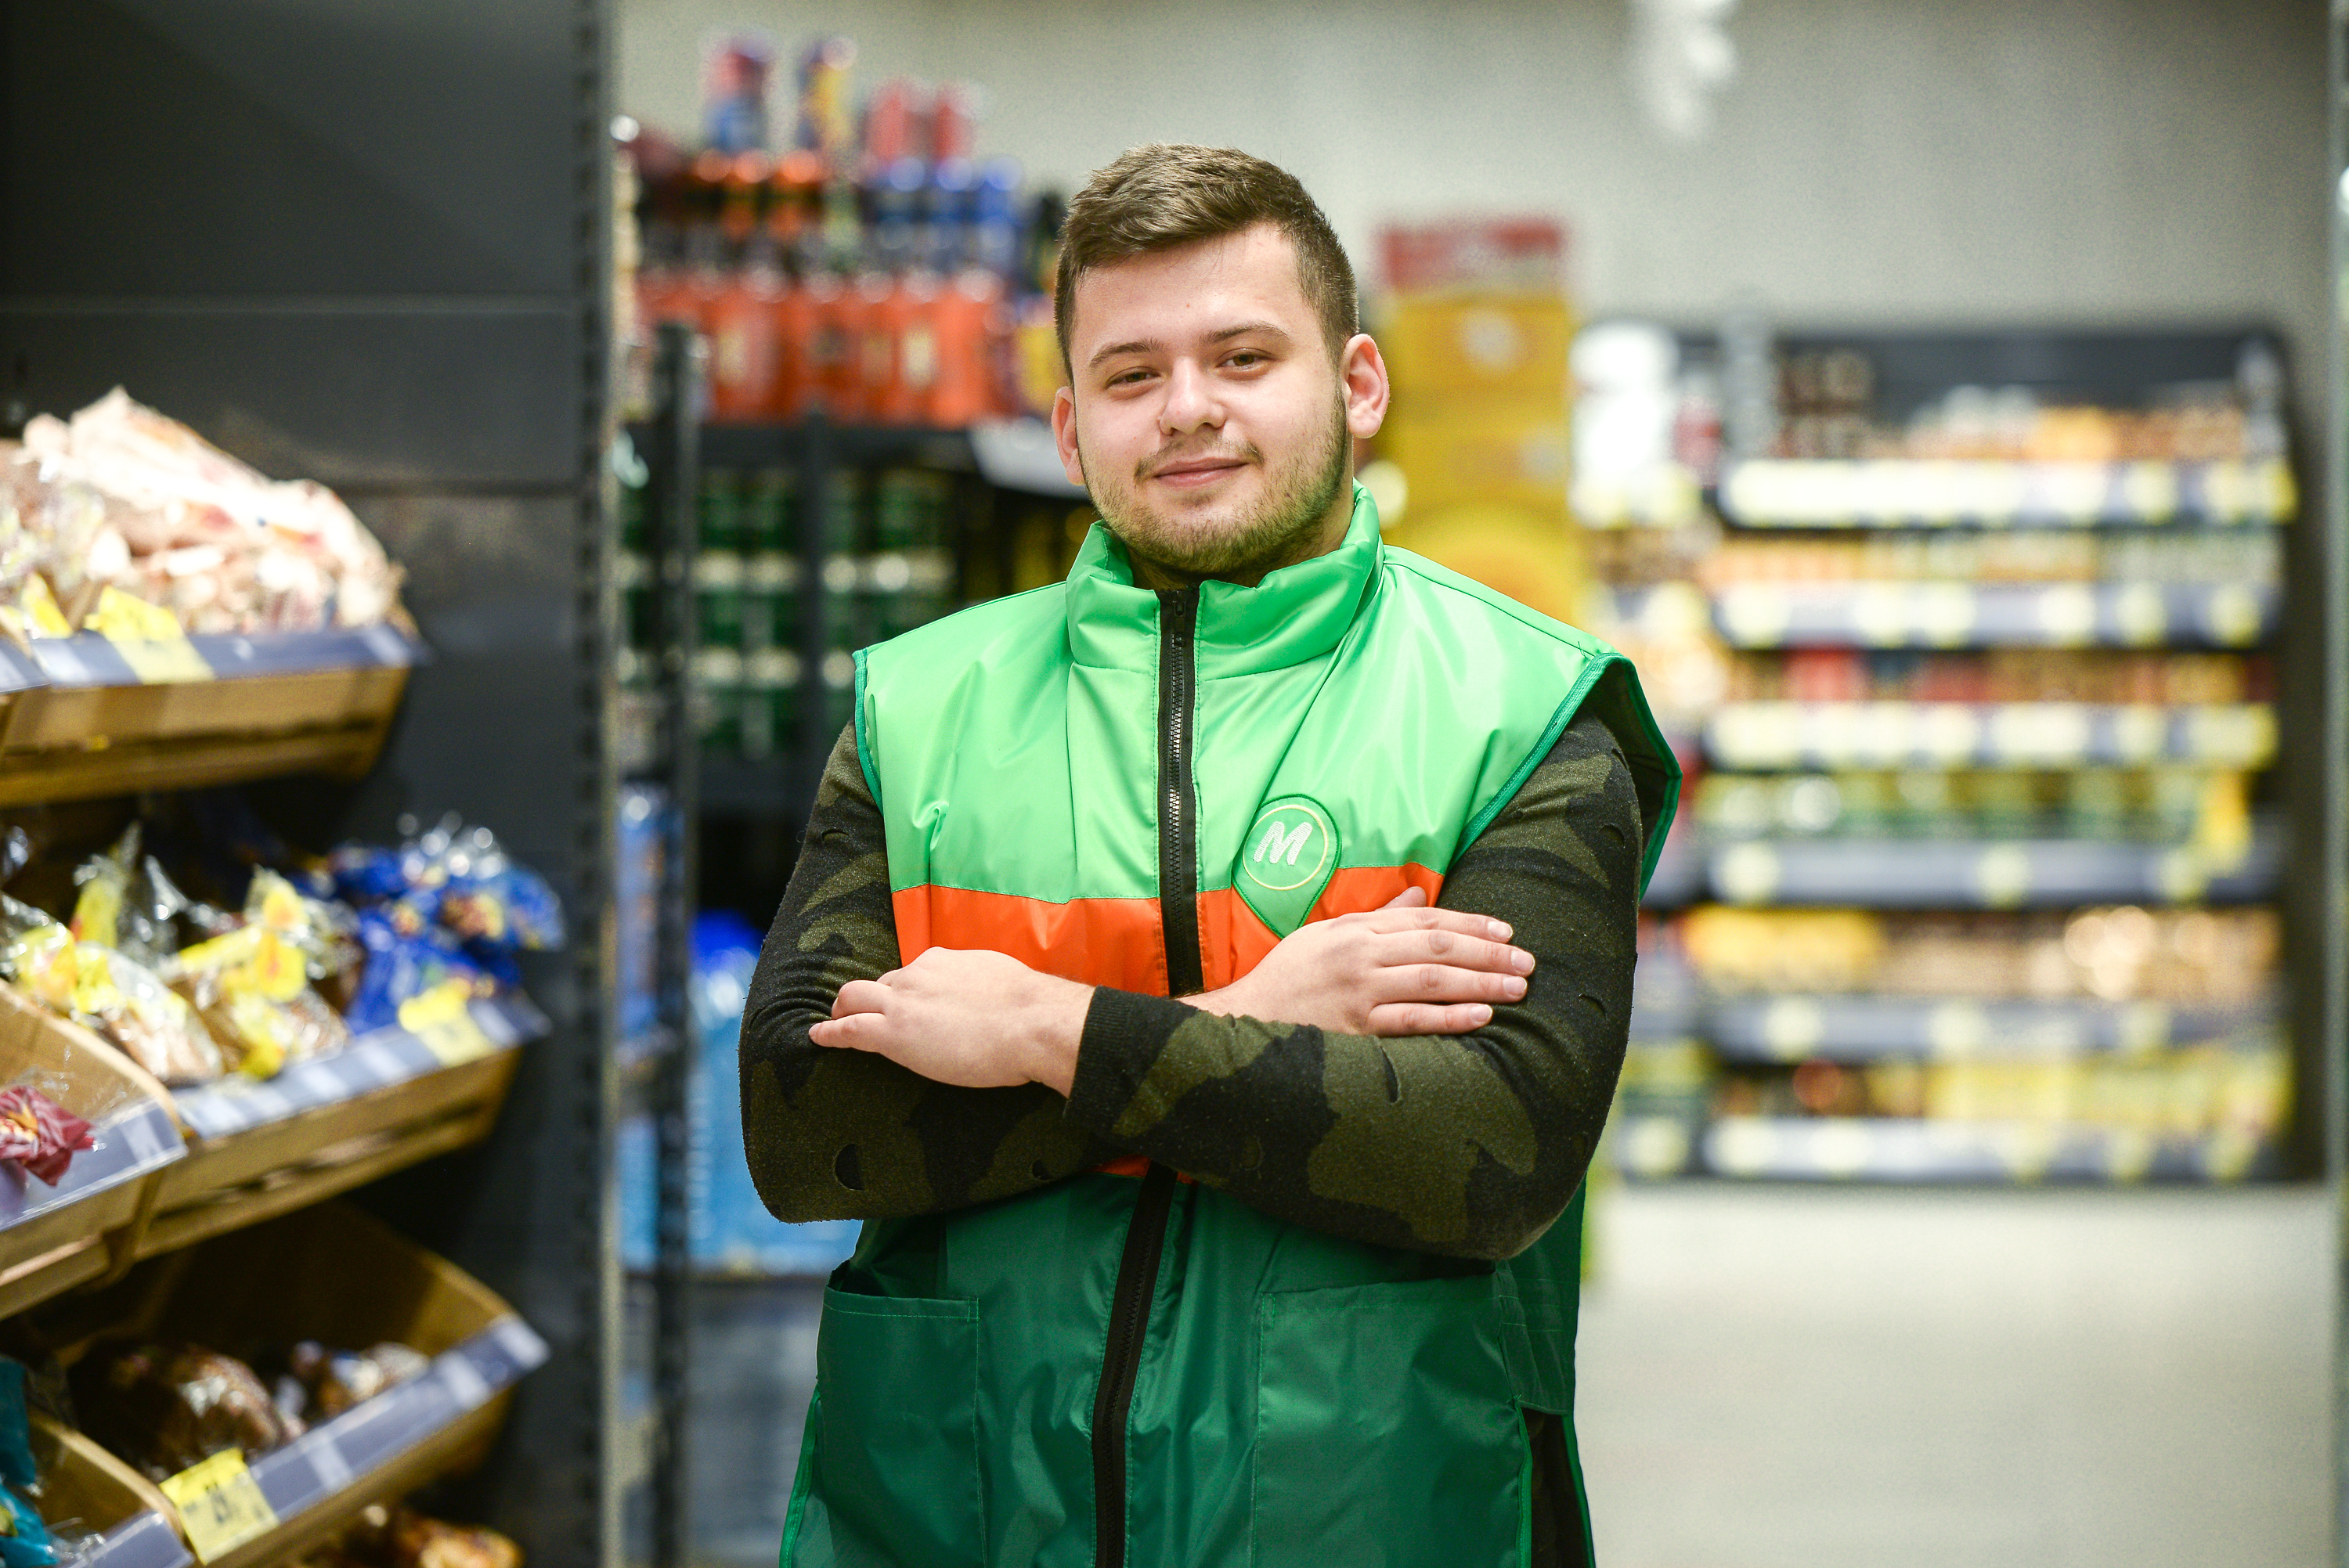 Алексей Иванов совмещает работу в магазине рядом со студенческим общежитием и учебу